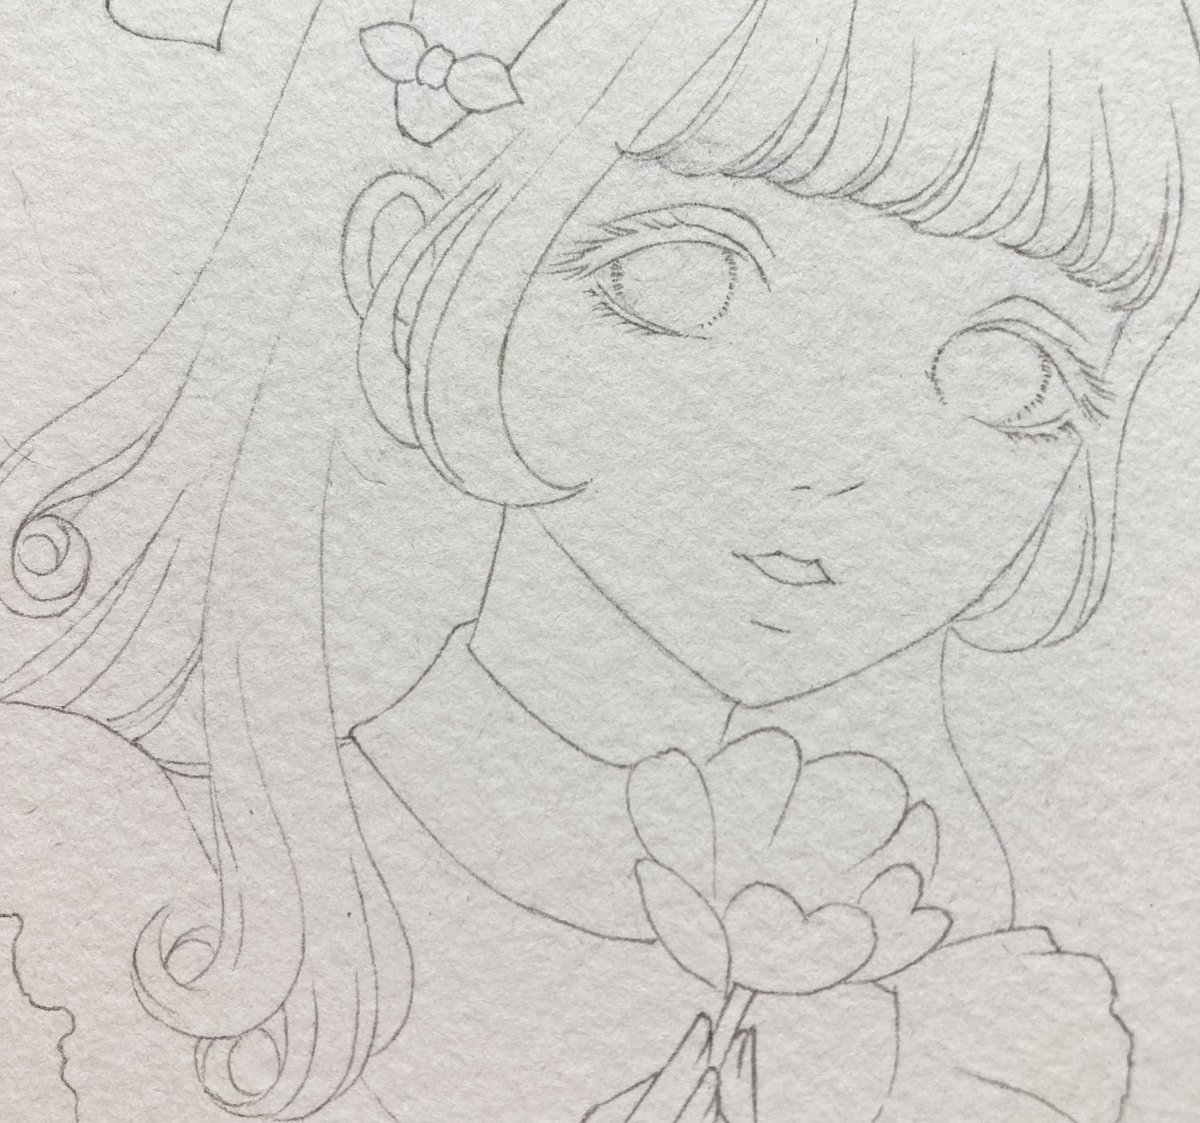 昭和レトロな女の子を描いてます❣️
お花はアネモネのつもりです🌸 